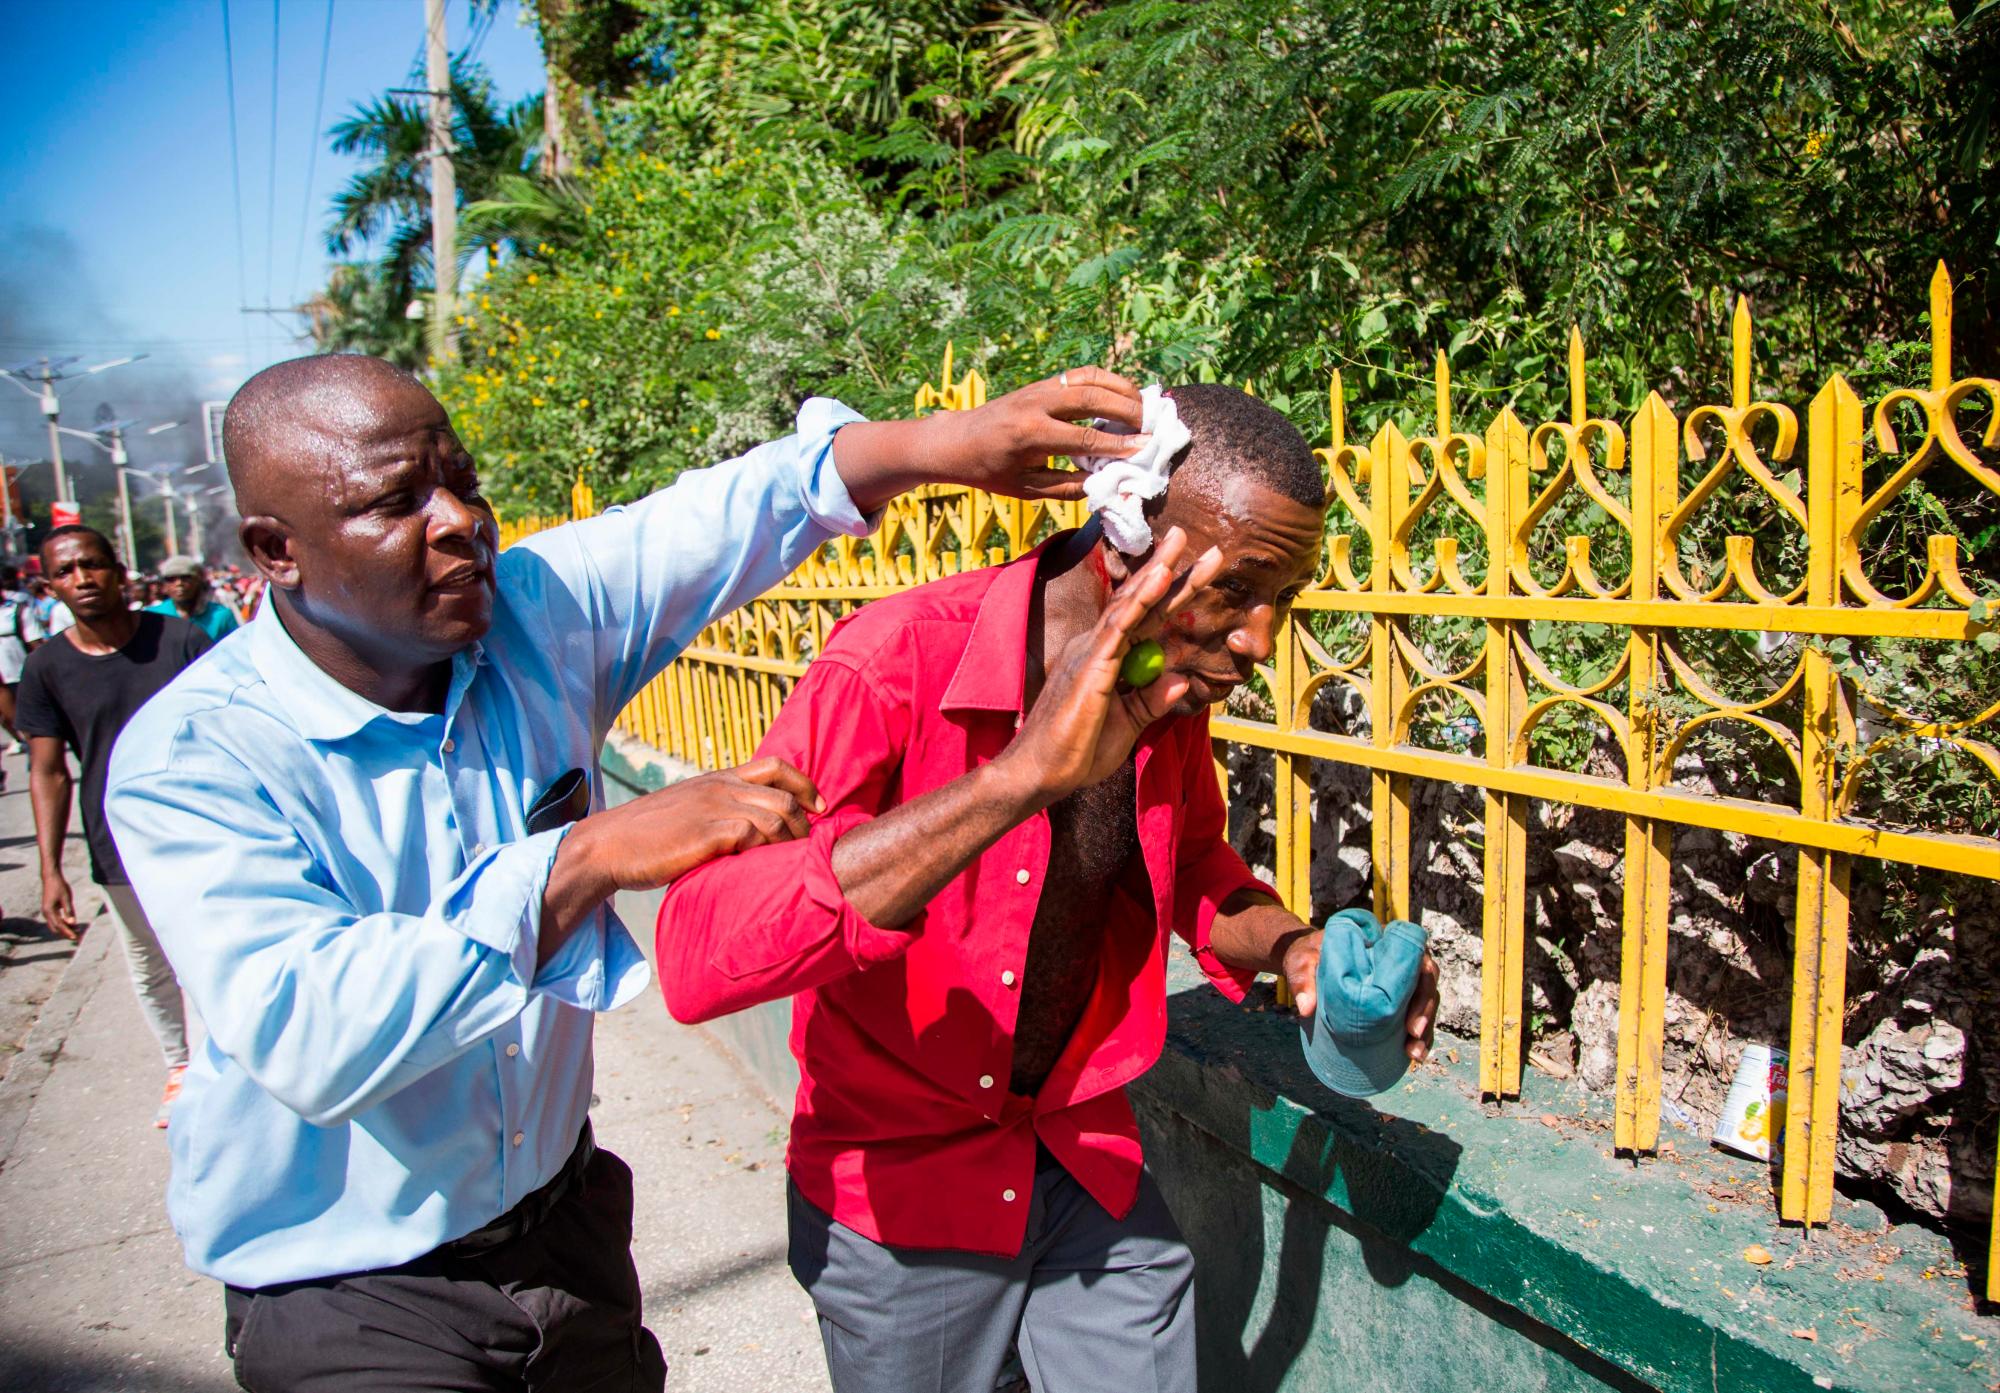 Un hombre atiende a un herido durante una protesta, en Puerto Príncipe (Haití) hoy, domingo 18 de noviembre de 2018. Miles de haitianos salieron hoy a las calles para participar en una nueva protesta nacional contra la corrupción y la impunidad, que ha dejado al menos dos muertos y varios heridos.